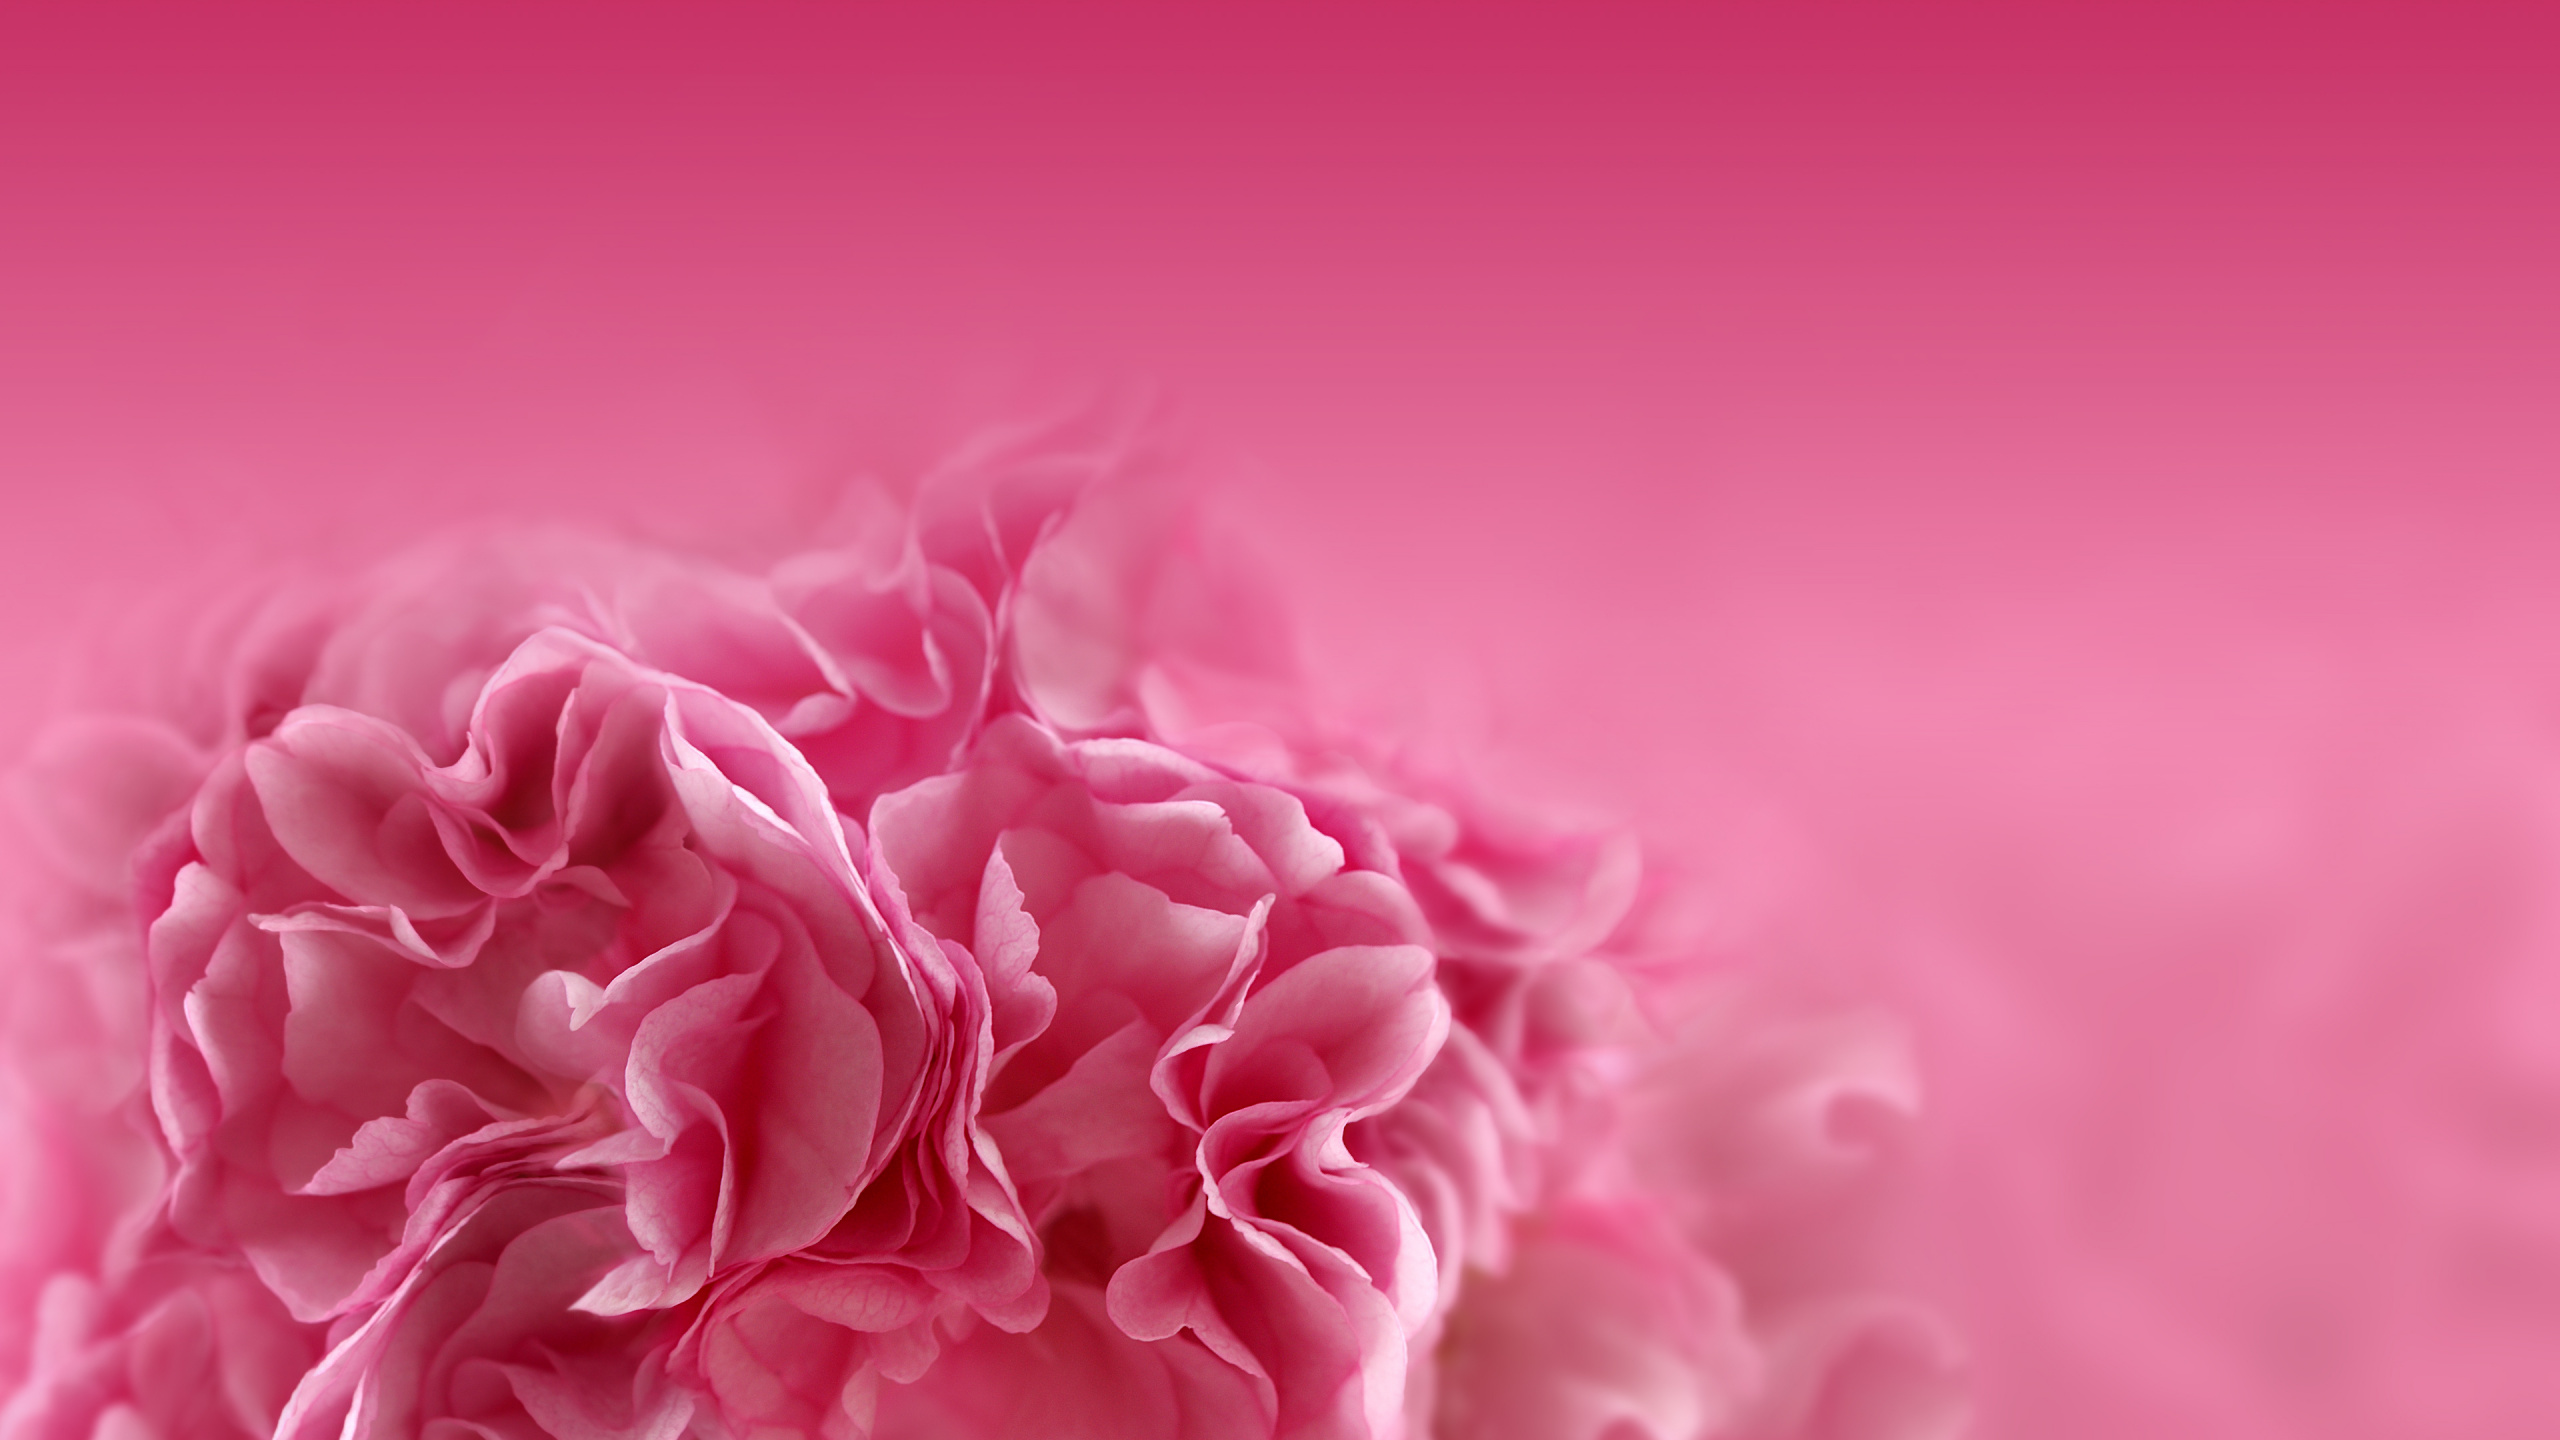 粉红色的花朵, 粉红色, 红色的, 牡丹, 康乃馨 壁纸 2560x1440 允许